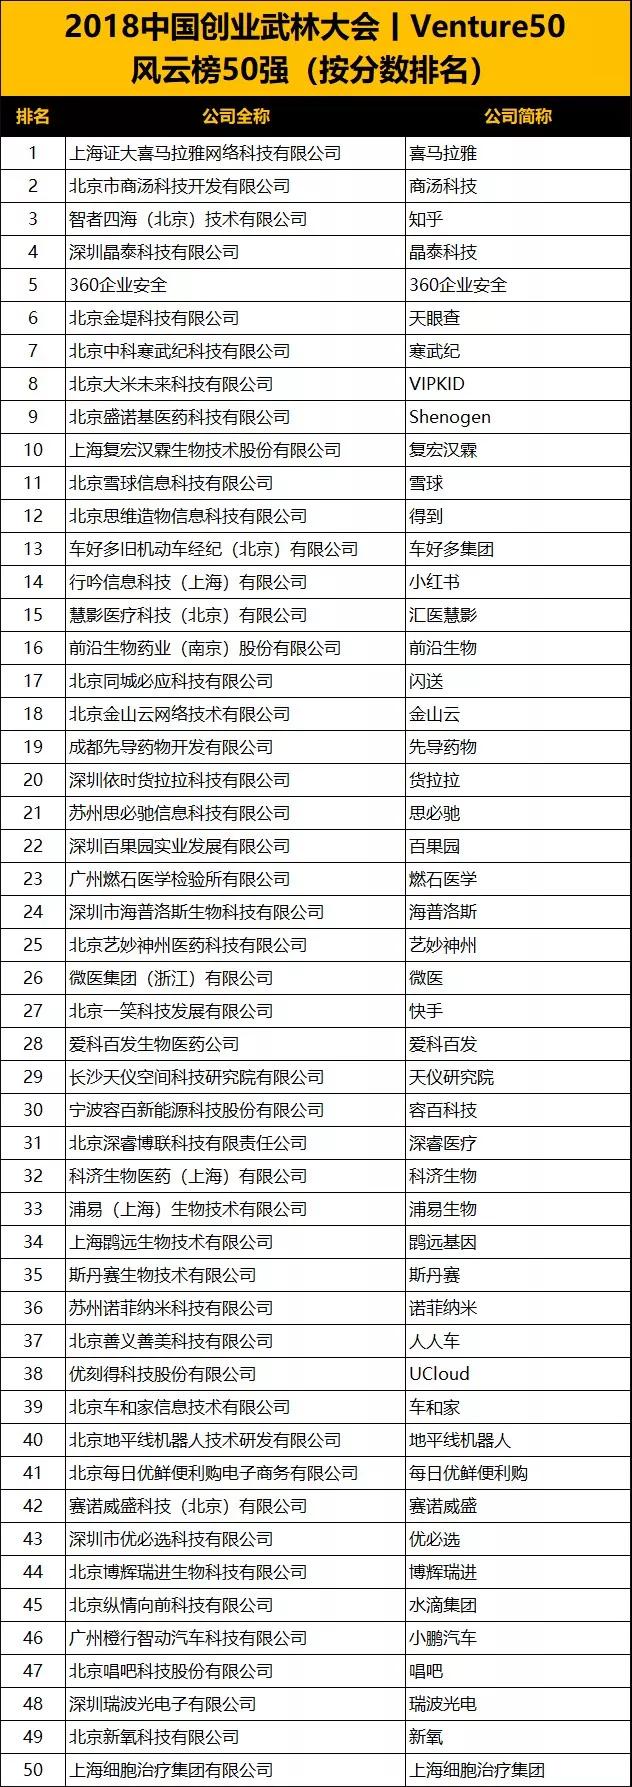 中国最具投资价值企业50强排行榜